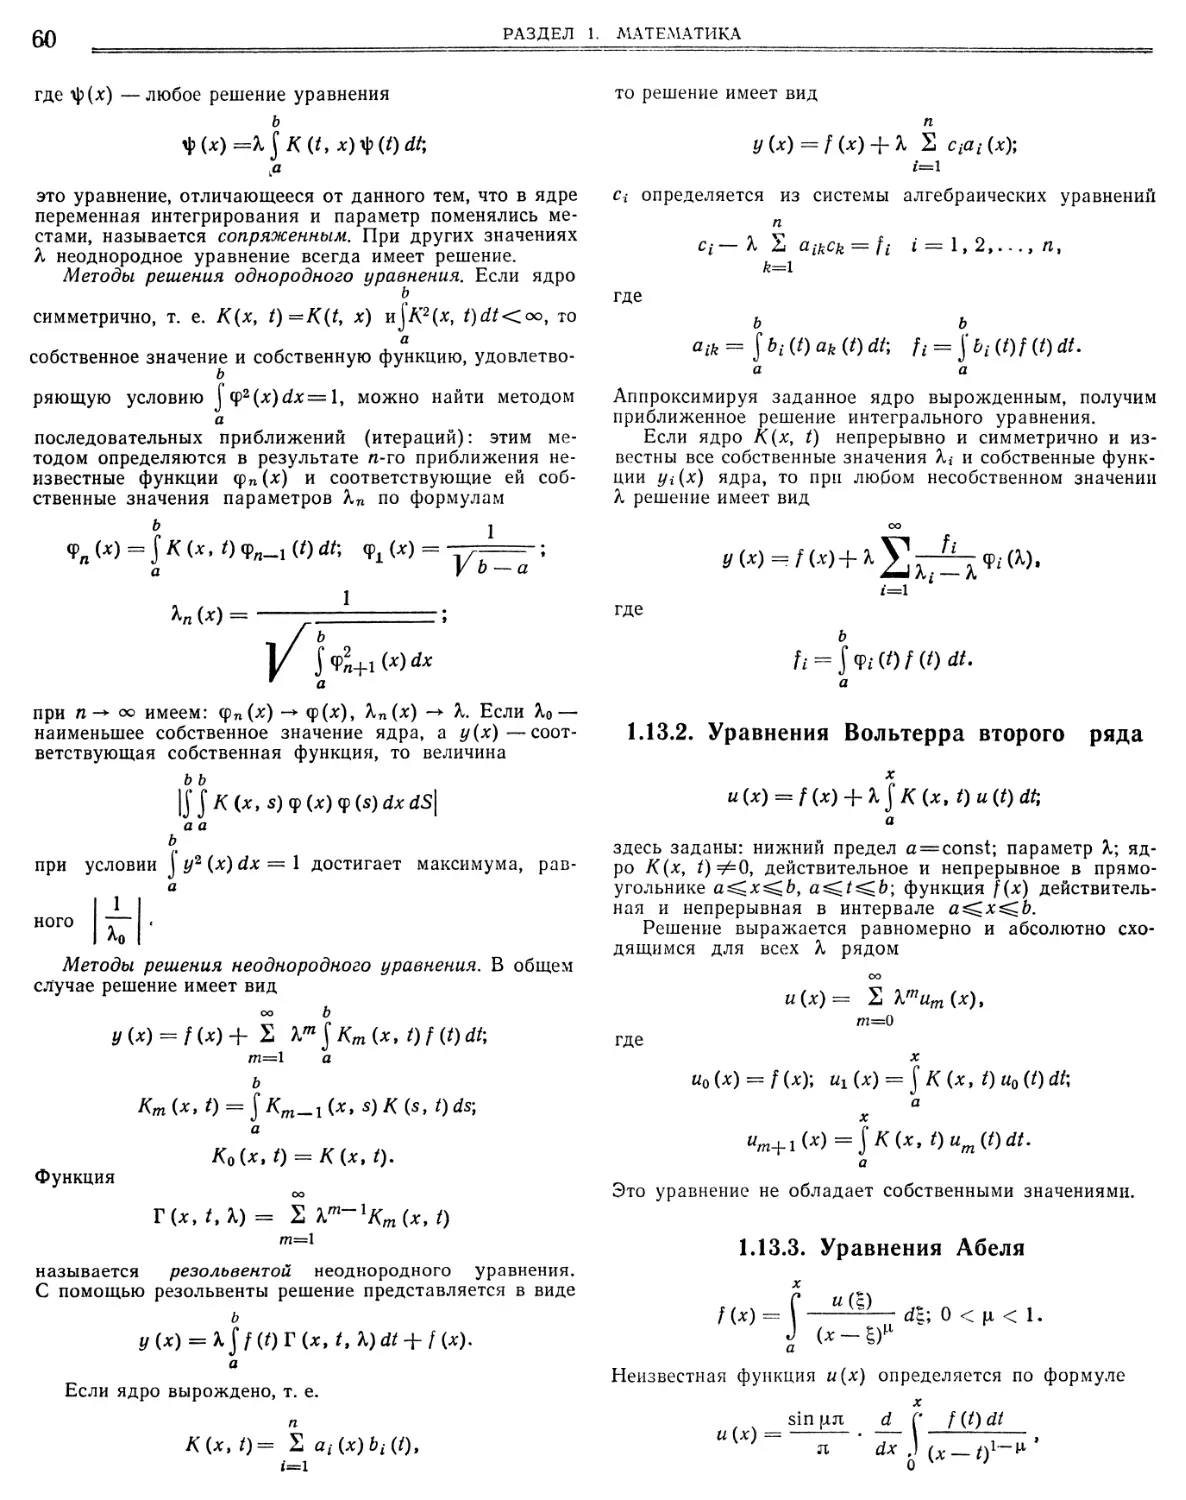 1.13.2. Уравнения Вольтерра второго ряда
1.13.3. Уравнения Абеля